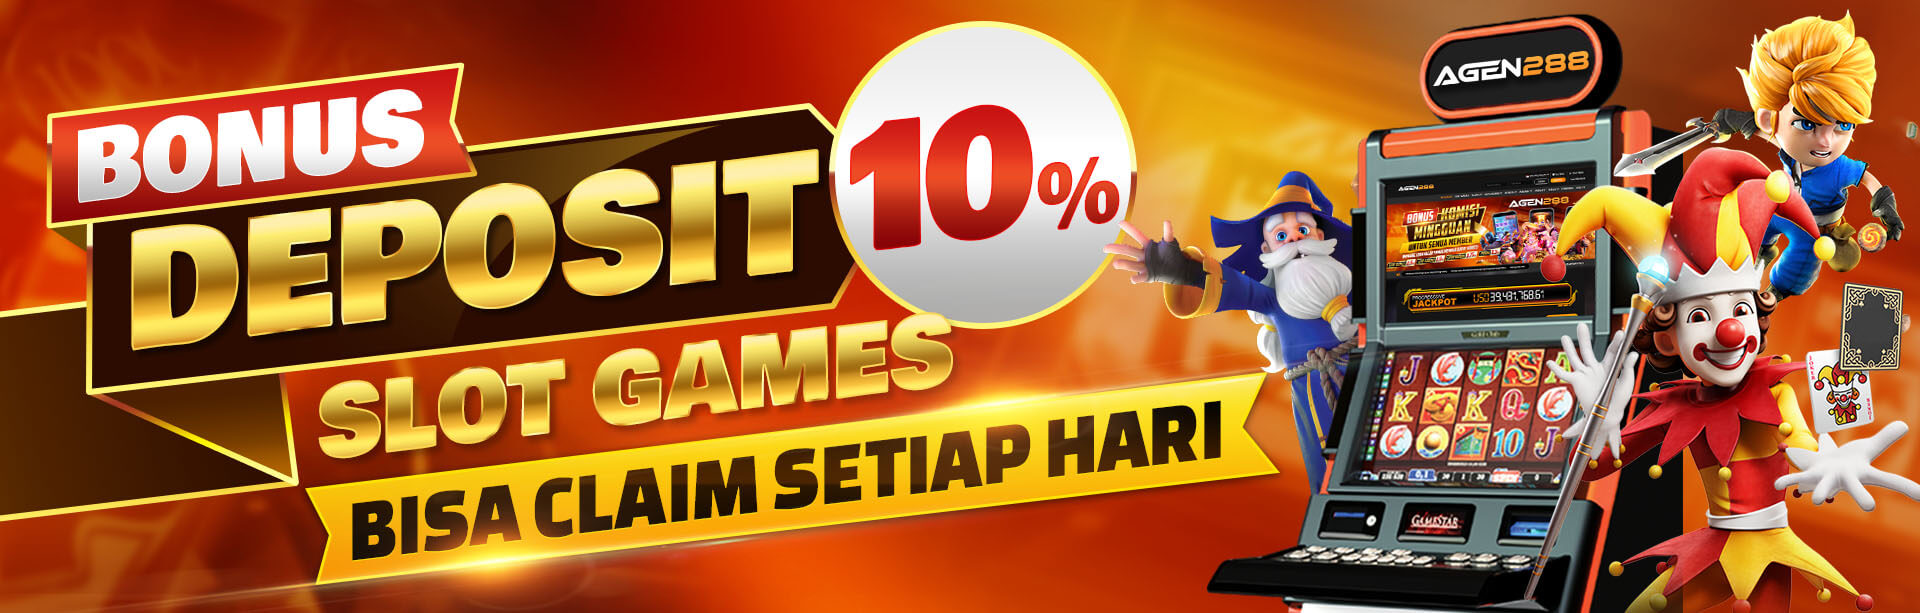 Bonus 10% Slot Games Setiap Hari